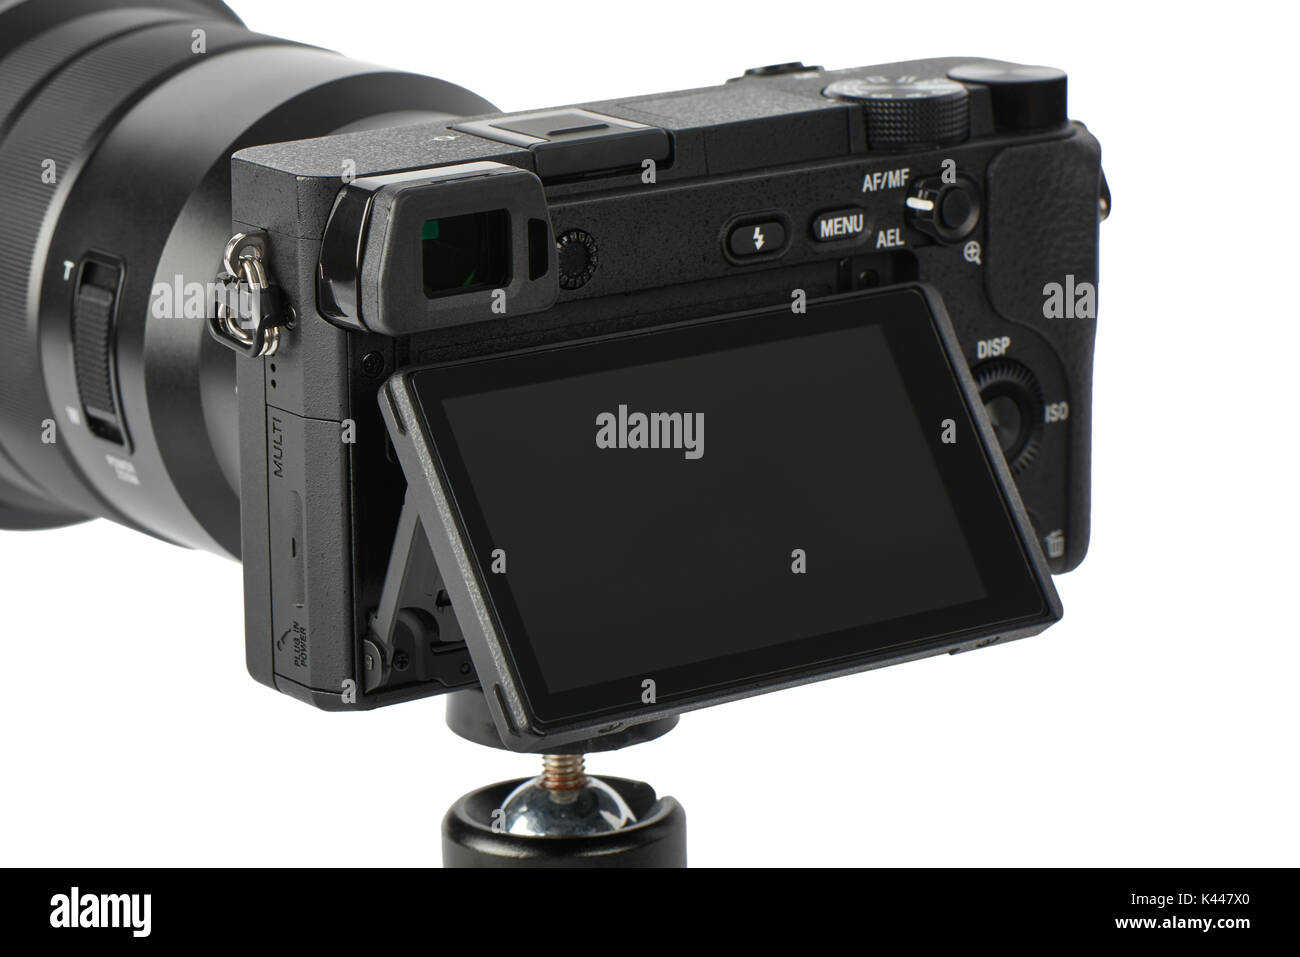 Gros plan du mirrorless caméra à objectif interchangeable avec objectif zoom et tilt shift de moniteur sur un trépied Banque D'Images